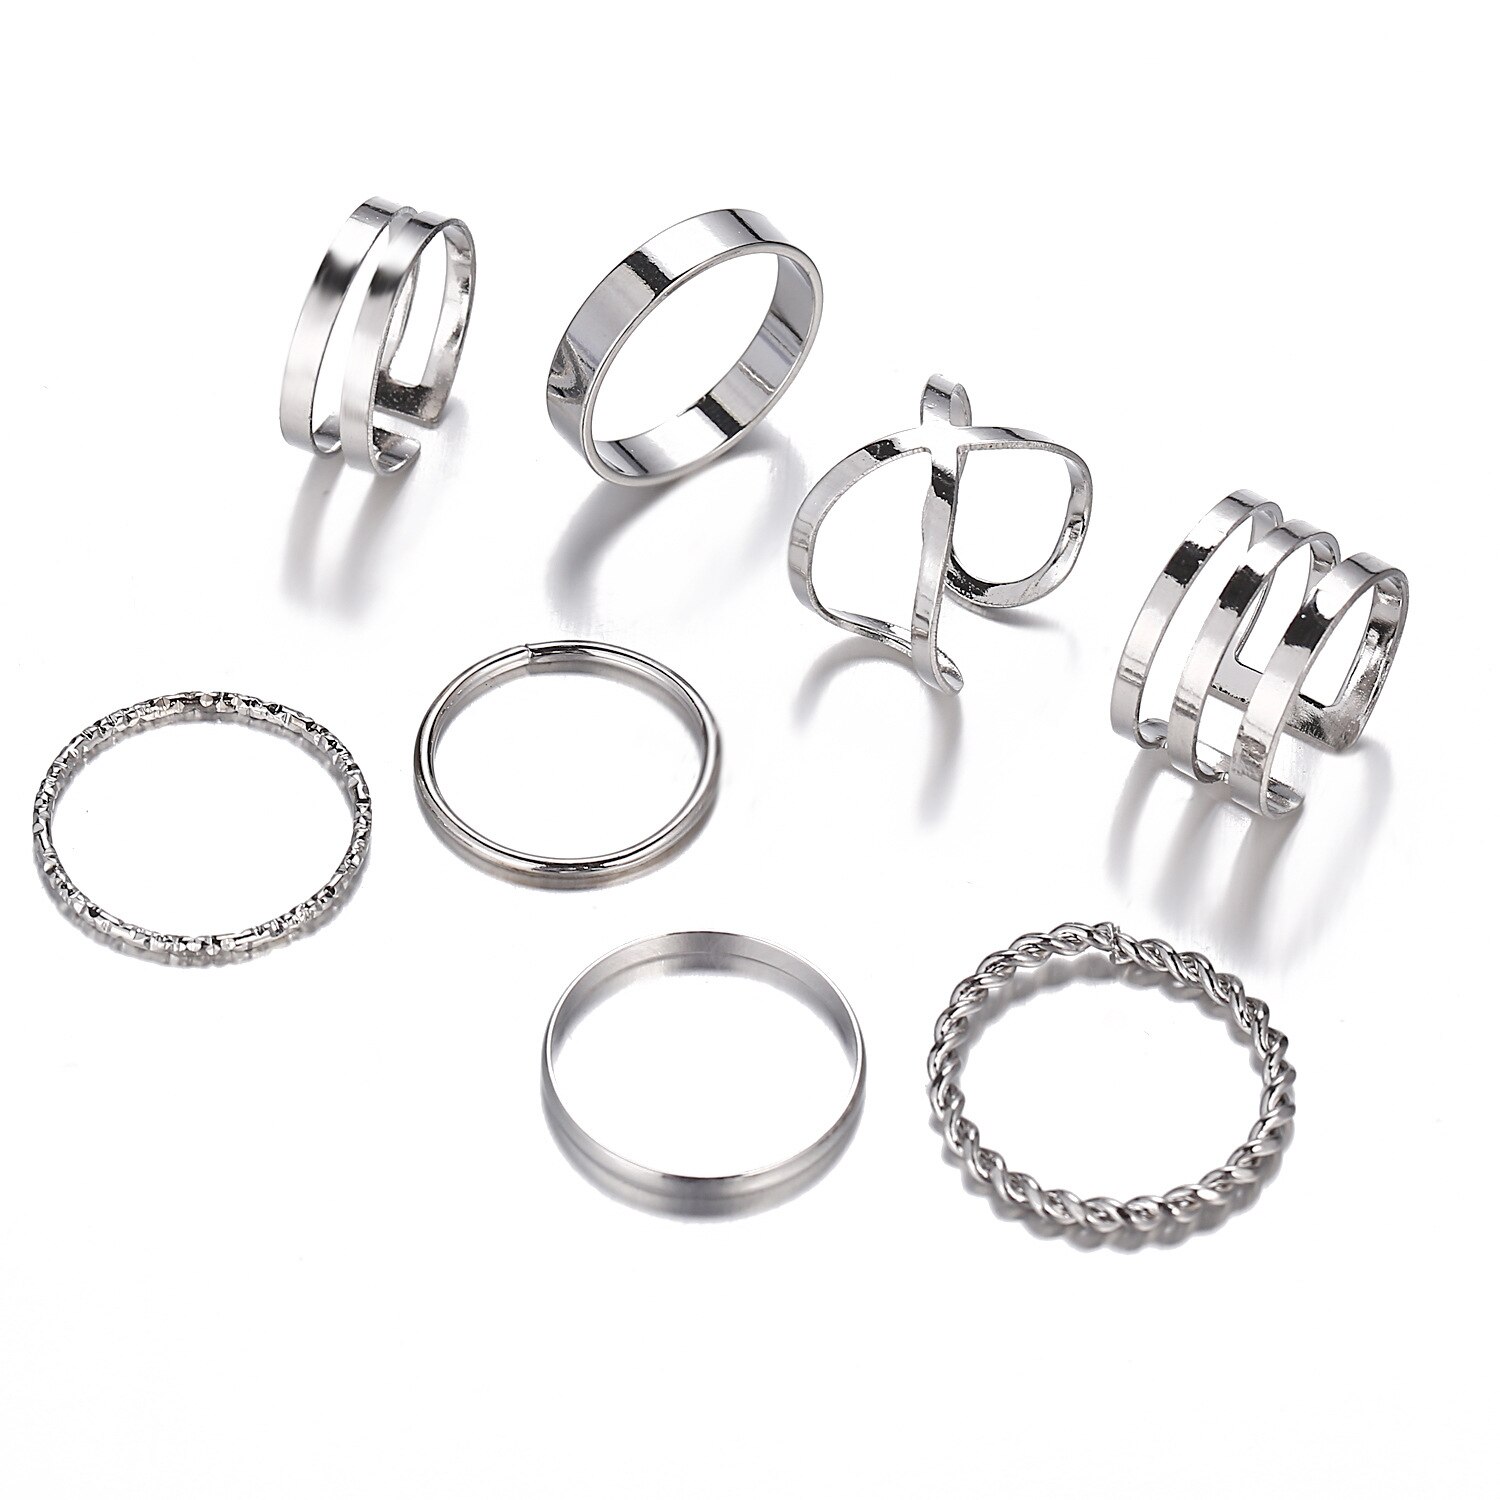 8 Stks/set Bohemian Vintage Ronde Hollow Geometrische Ringen Voor Vrouwen Mode Cross Twist Open Ring Knuckle Vinger Ringen Sieraden: Sliver